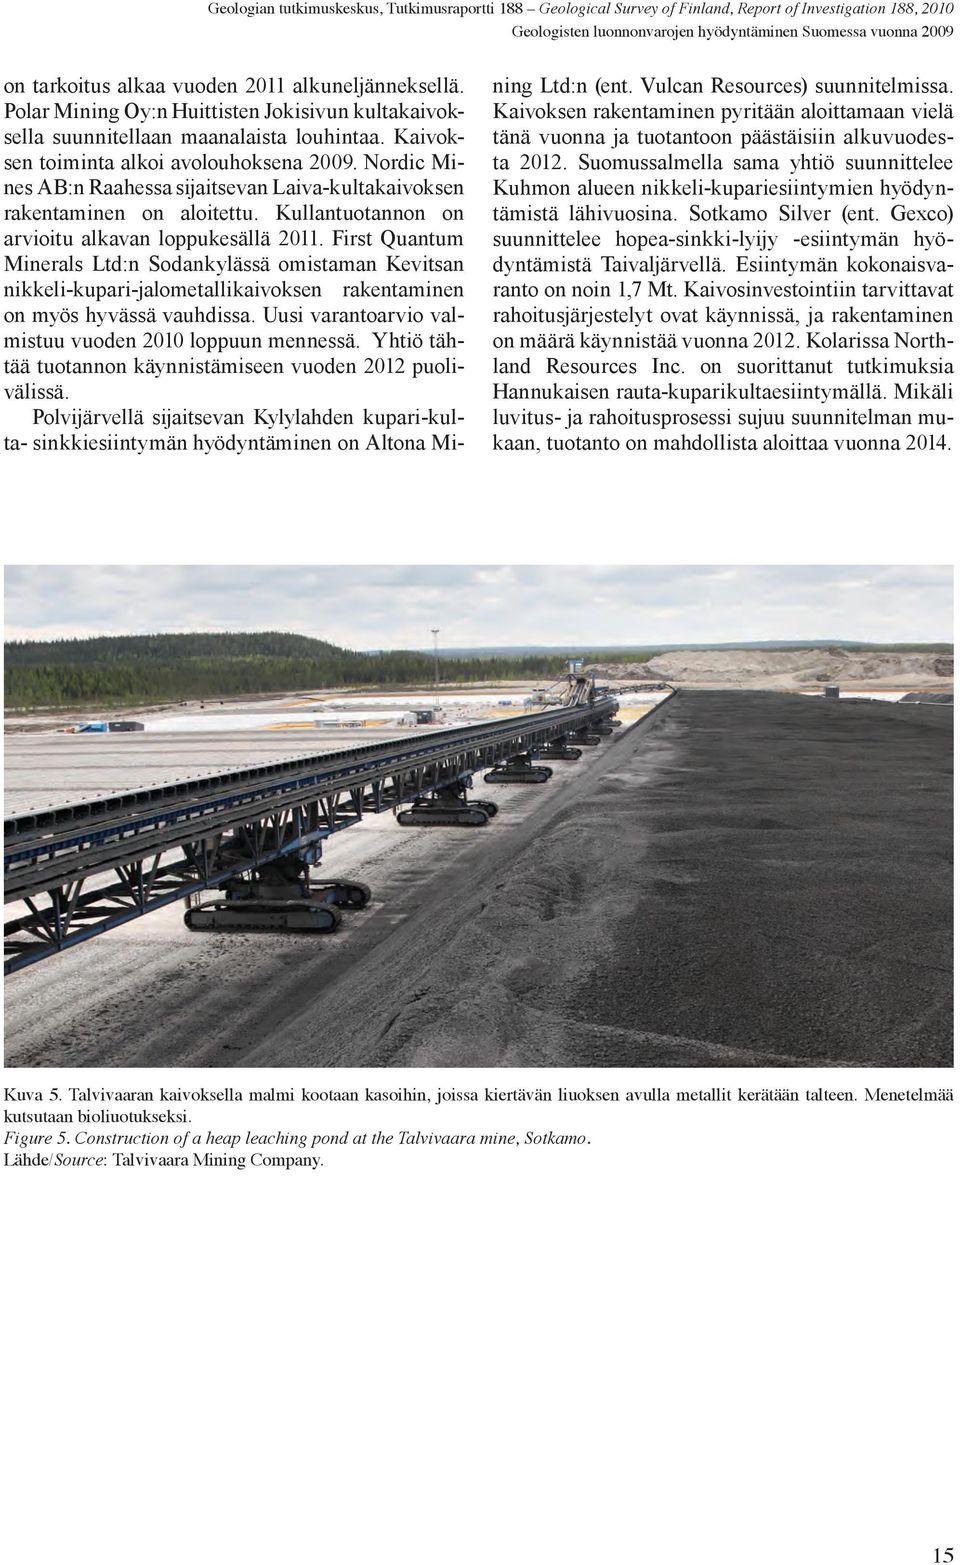 Nordic Mines AB:n Raahessa sijaitsevan Laiva-kultakaivoksen rakentaminen on aloitettu. Kullantuotannon on arvioitu alkavan loppukesällä 2011.